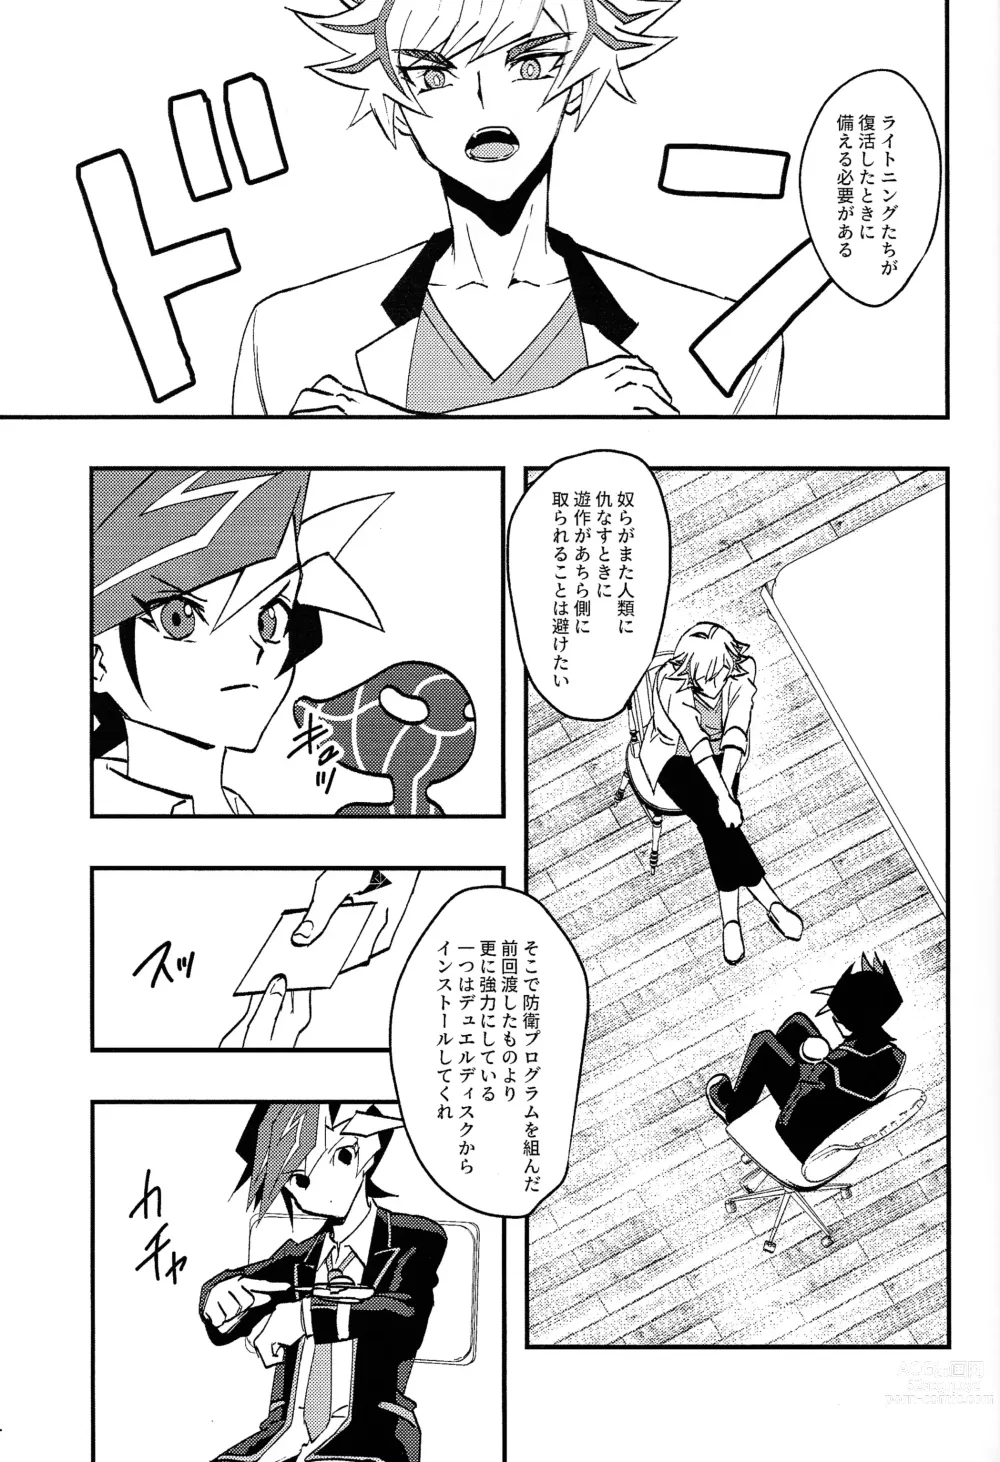 Page 2 of doujinshi Saisho kara ie!!